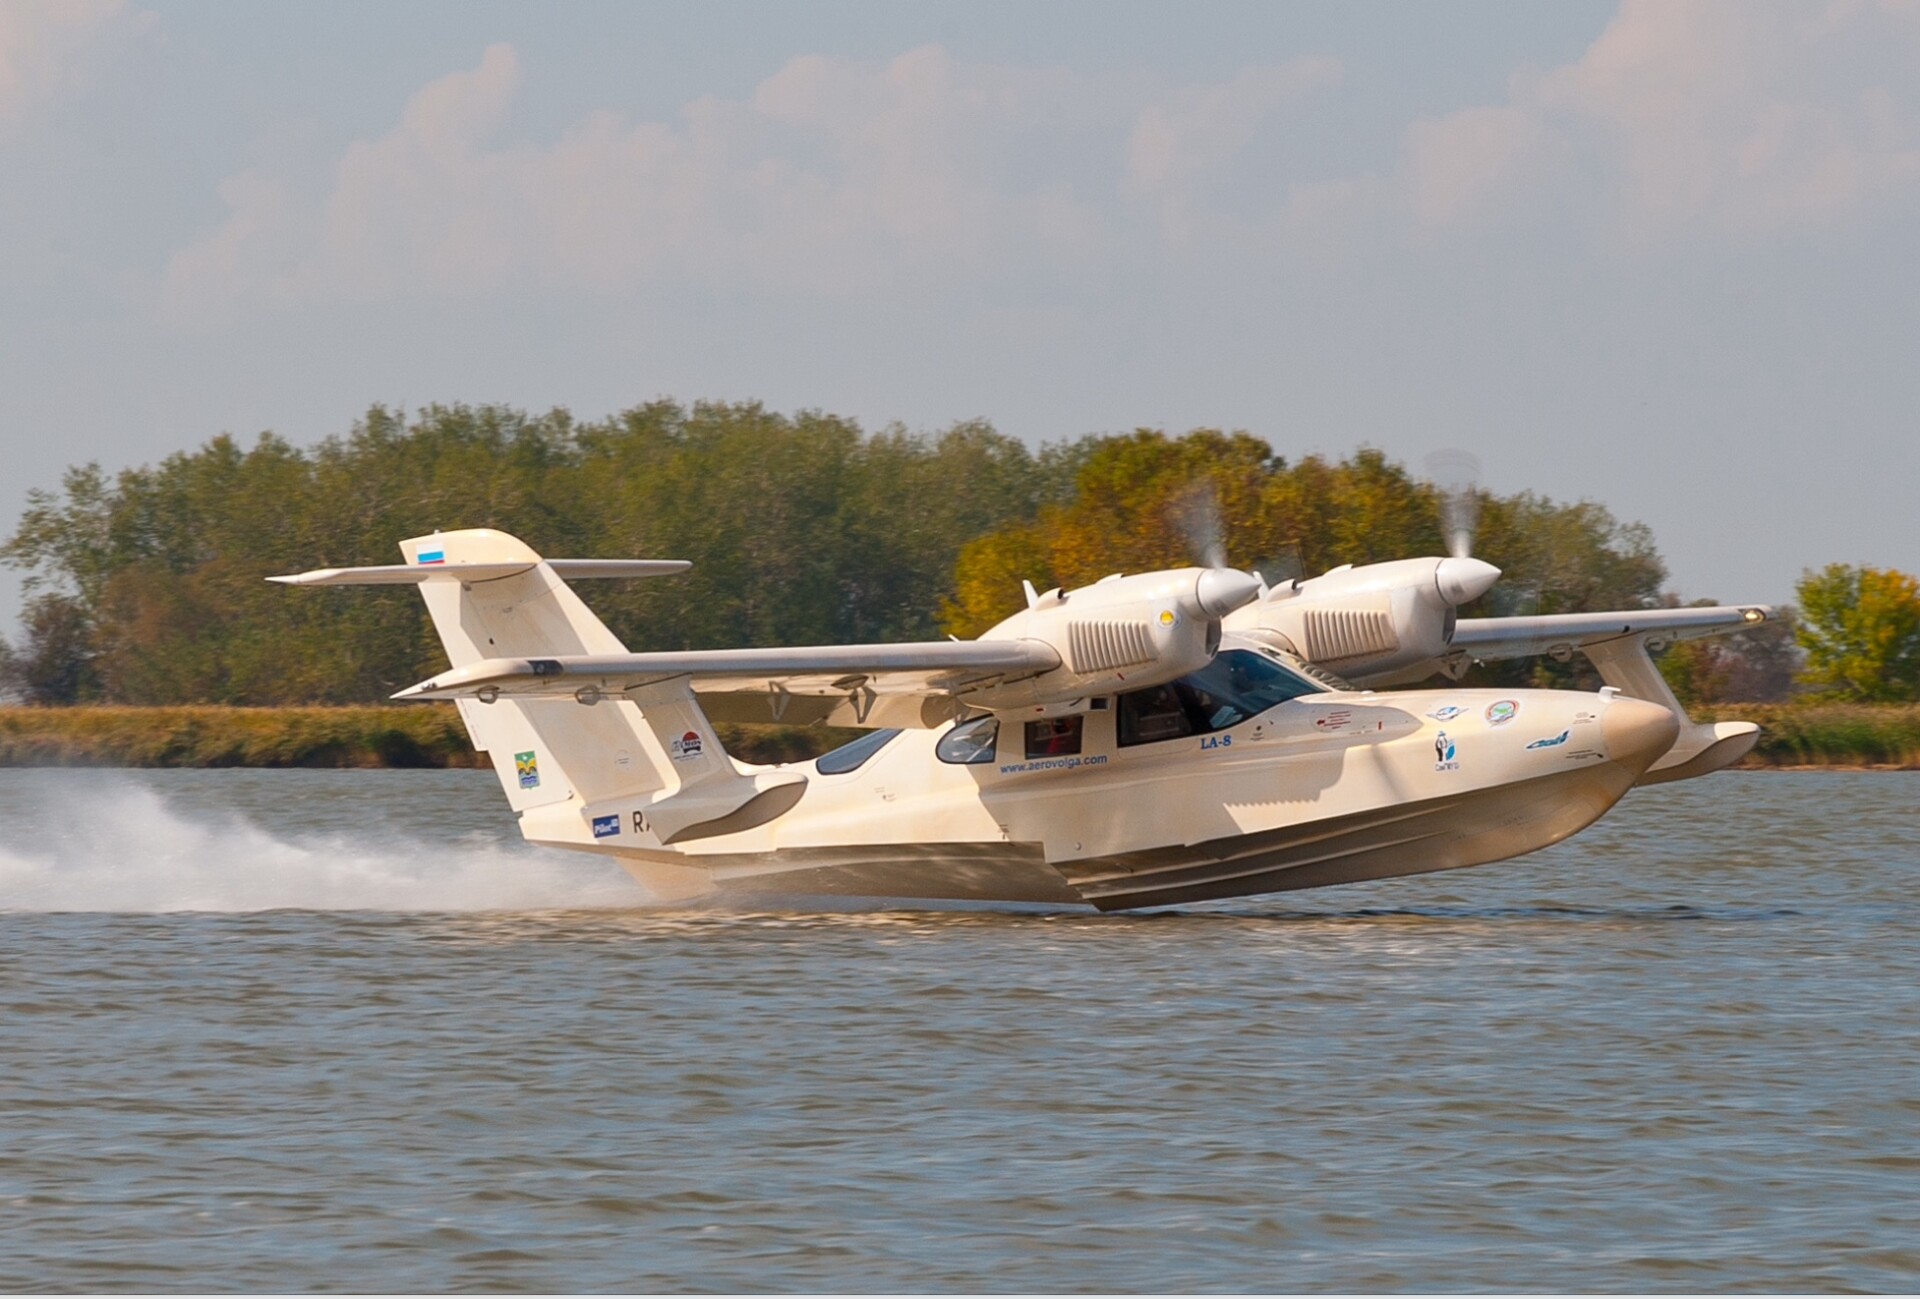 delta aerospace AeroVolga LA-8 amphibious seaplane